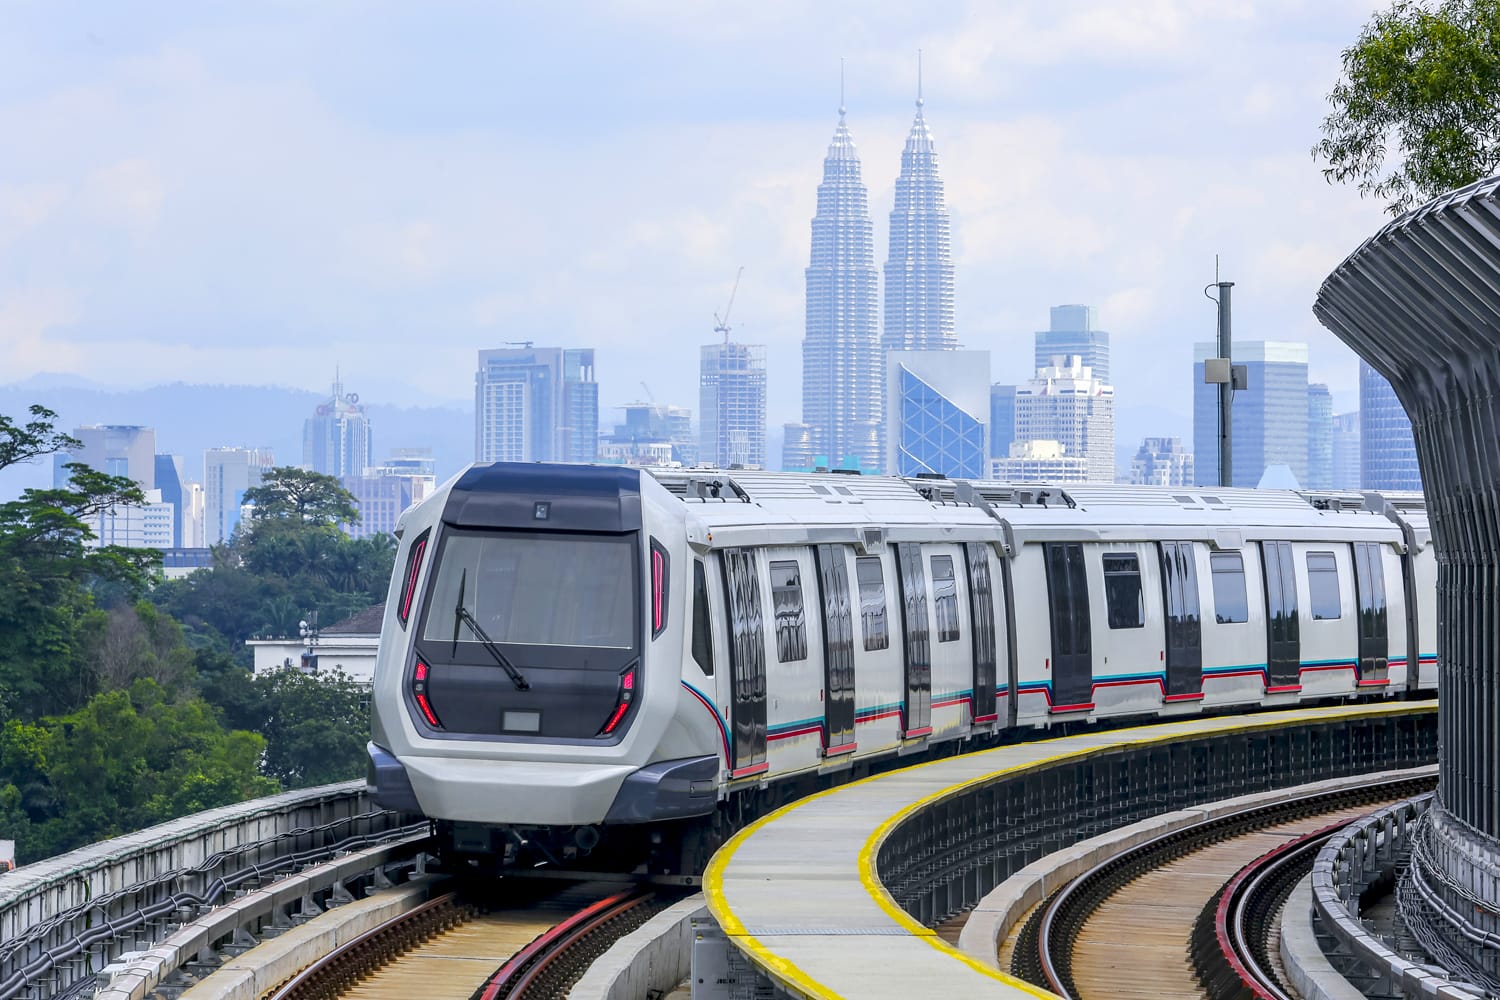 Τρένο MRT της Μαλαισίας (Μαζική Ταχεία Διαμετακόμιση) στο KL